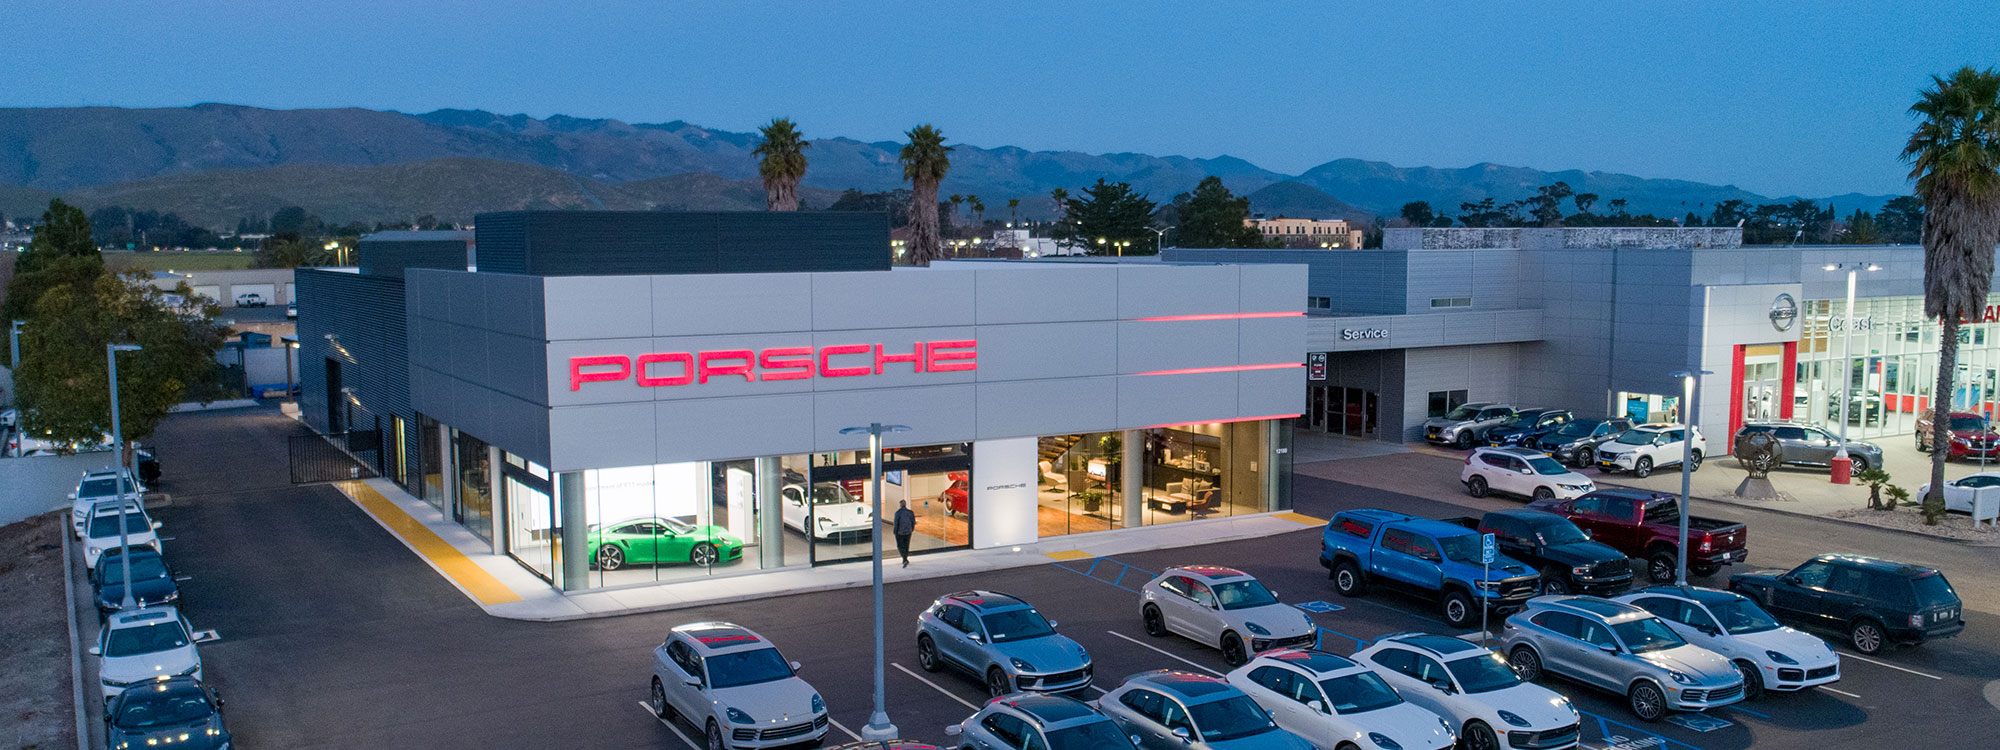 Porsche of San Luis Obispo Automotive Sales Construction - Building Contractor - JW Design & Construction